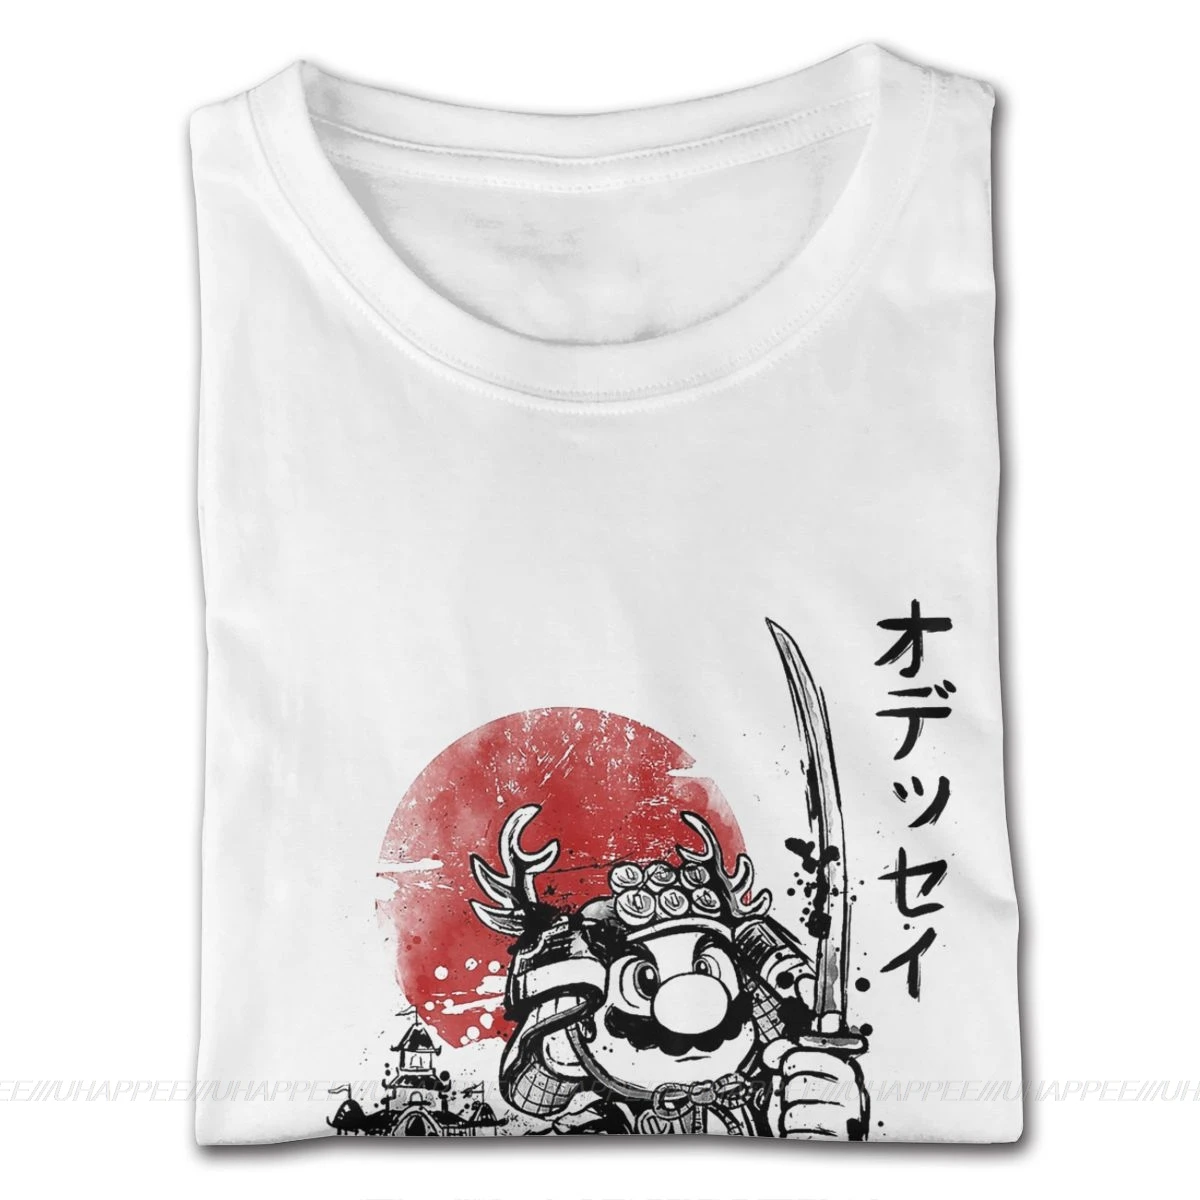 Samurai Super Mario Tees Fyre 2020 Bedste T-Shirt Mænd Korte Ærmer Billige Mærker Officielle Beklædning